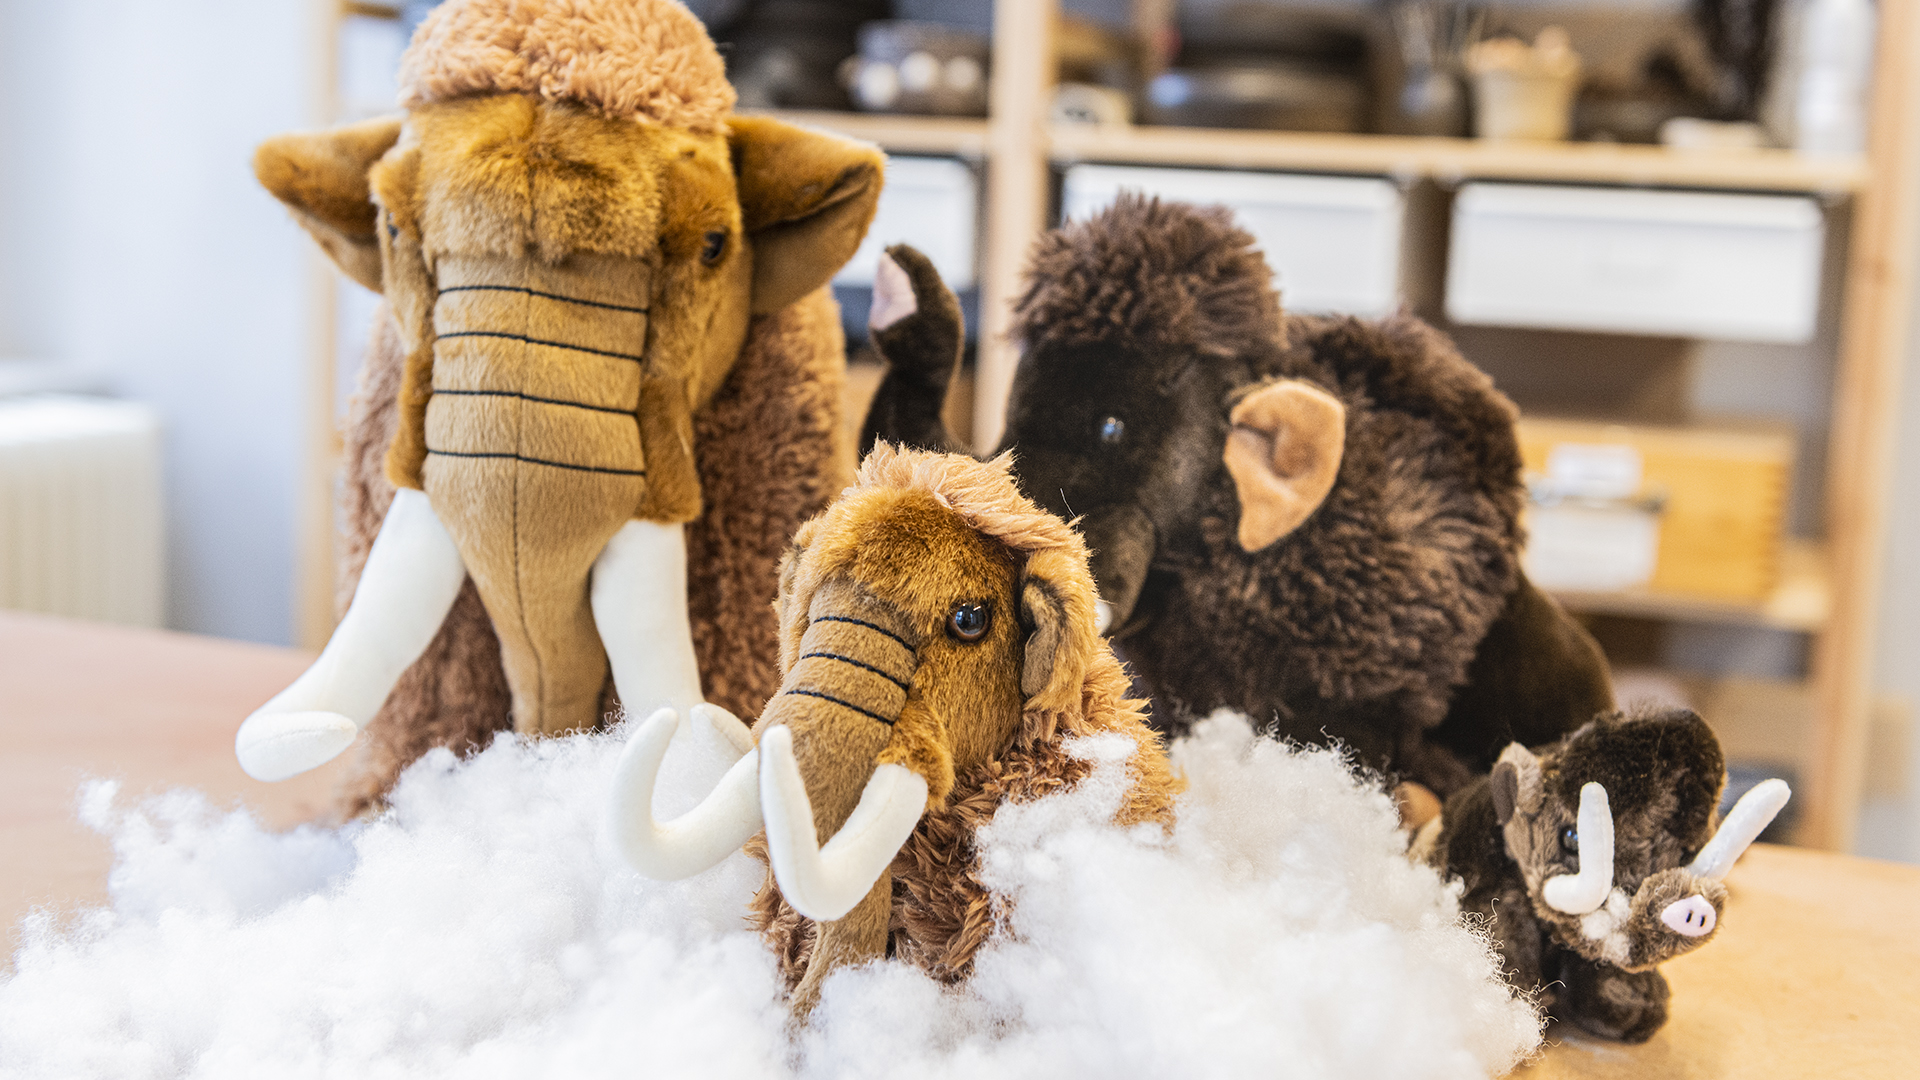 Kuschelmammuts sind auf Stopfwolle drapiert. Sie sollen die Kreativaktion Mammutausstopfen veranschaulichen.